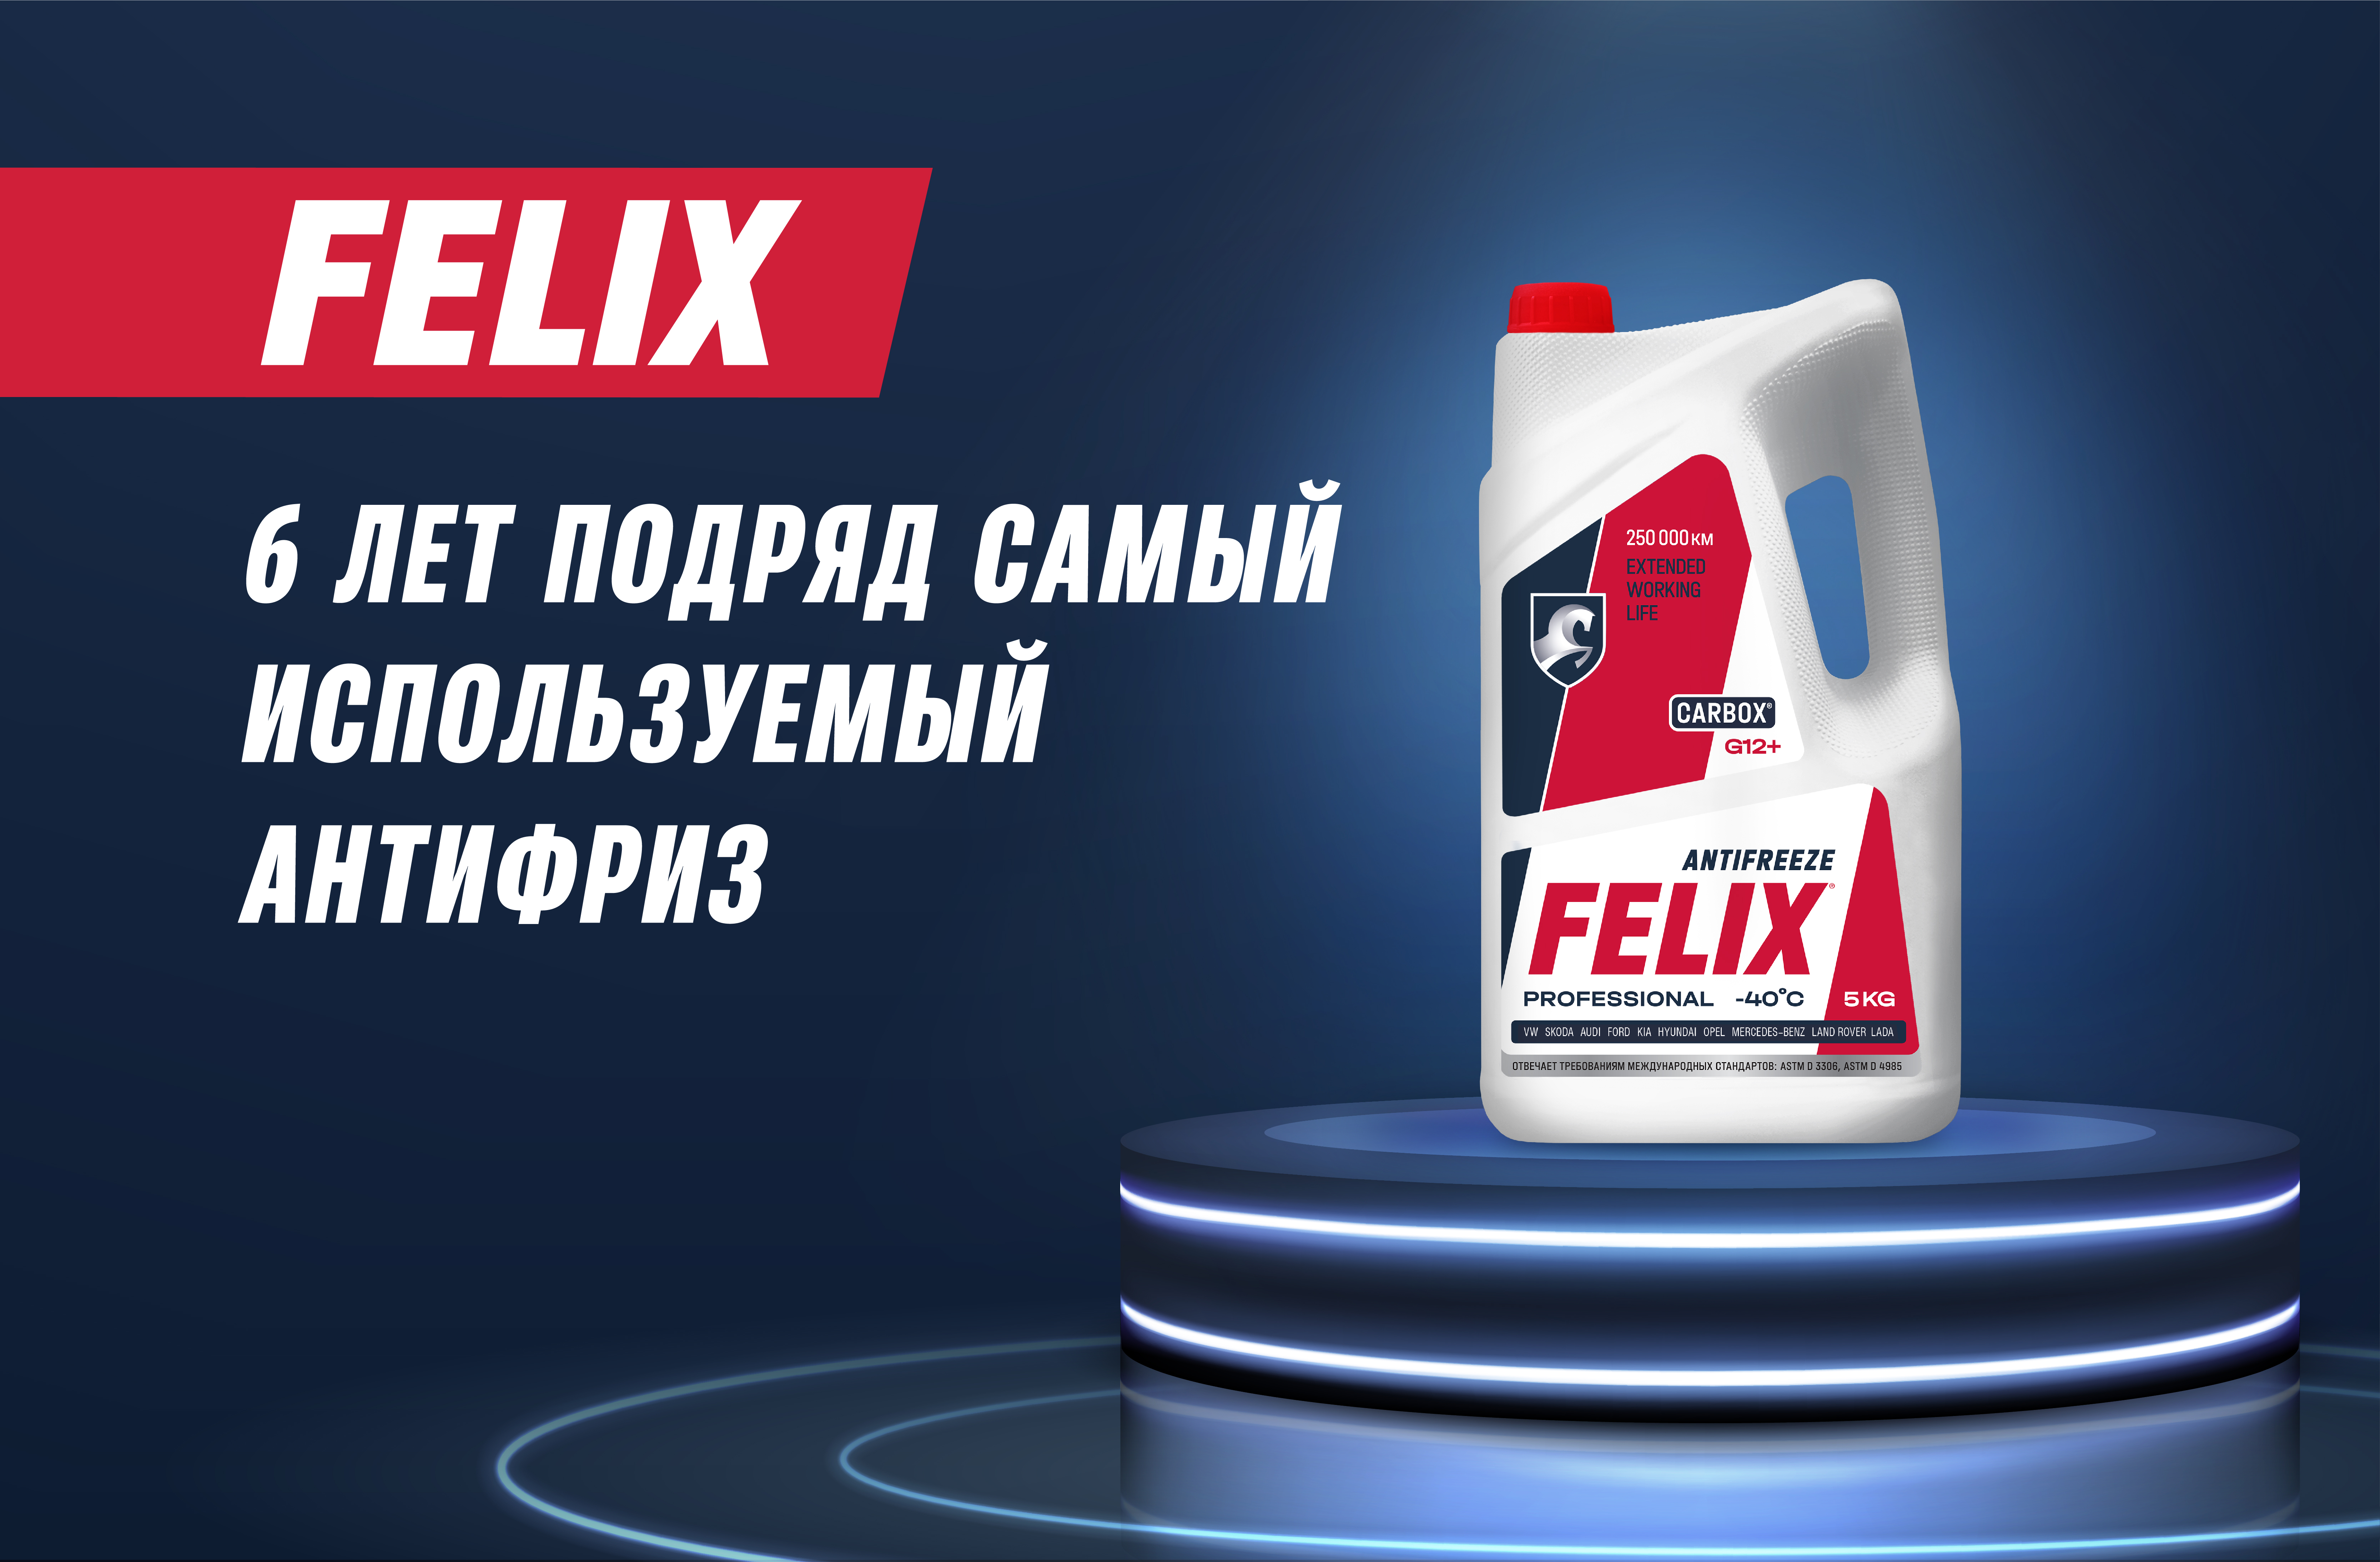 FELIX – самый используемый антифриз в России на протяжении 6 лет подряд!